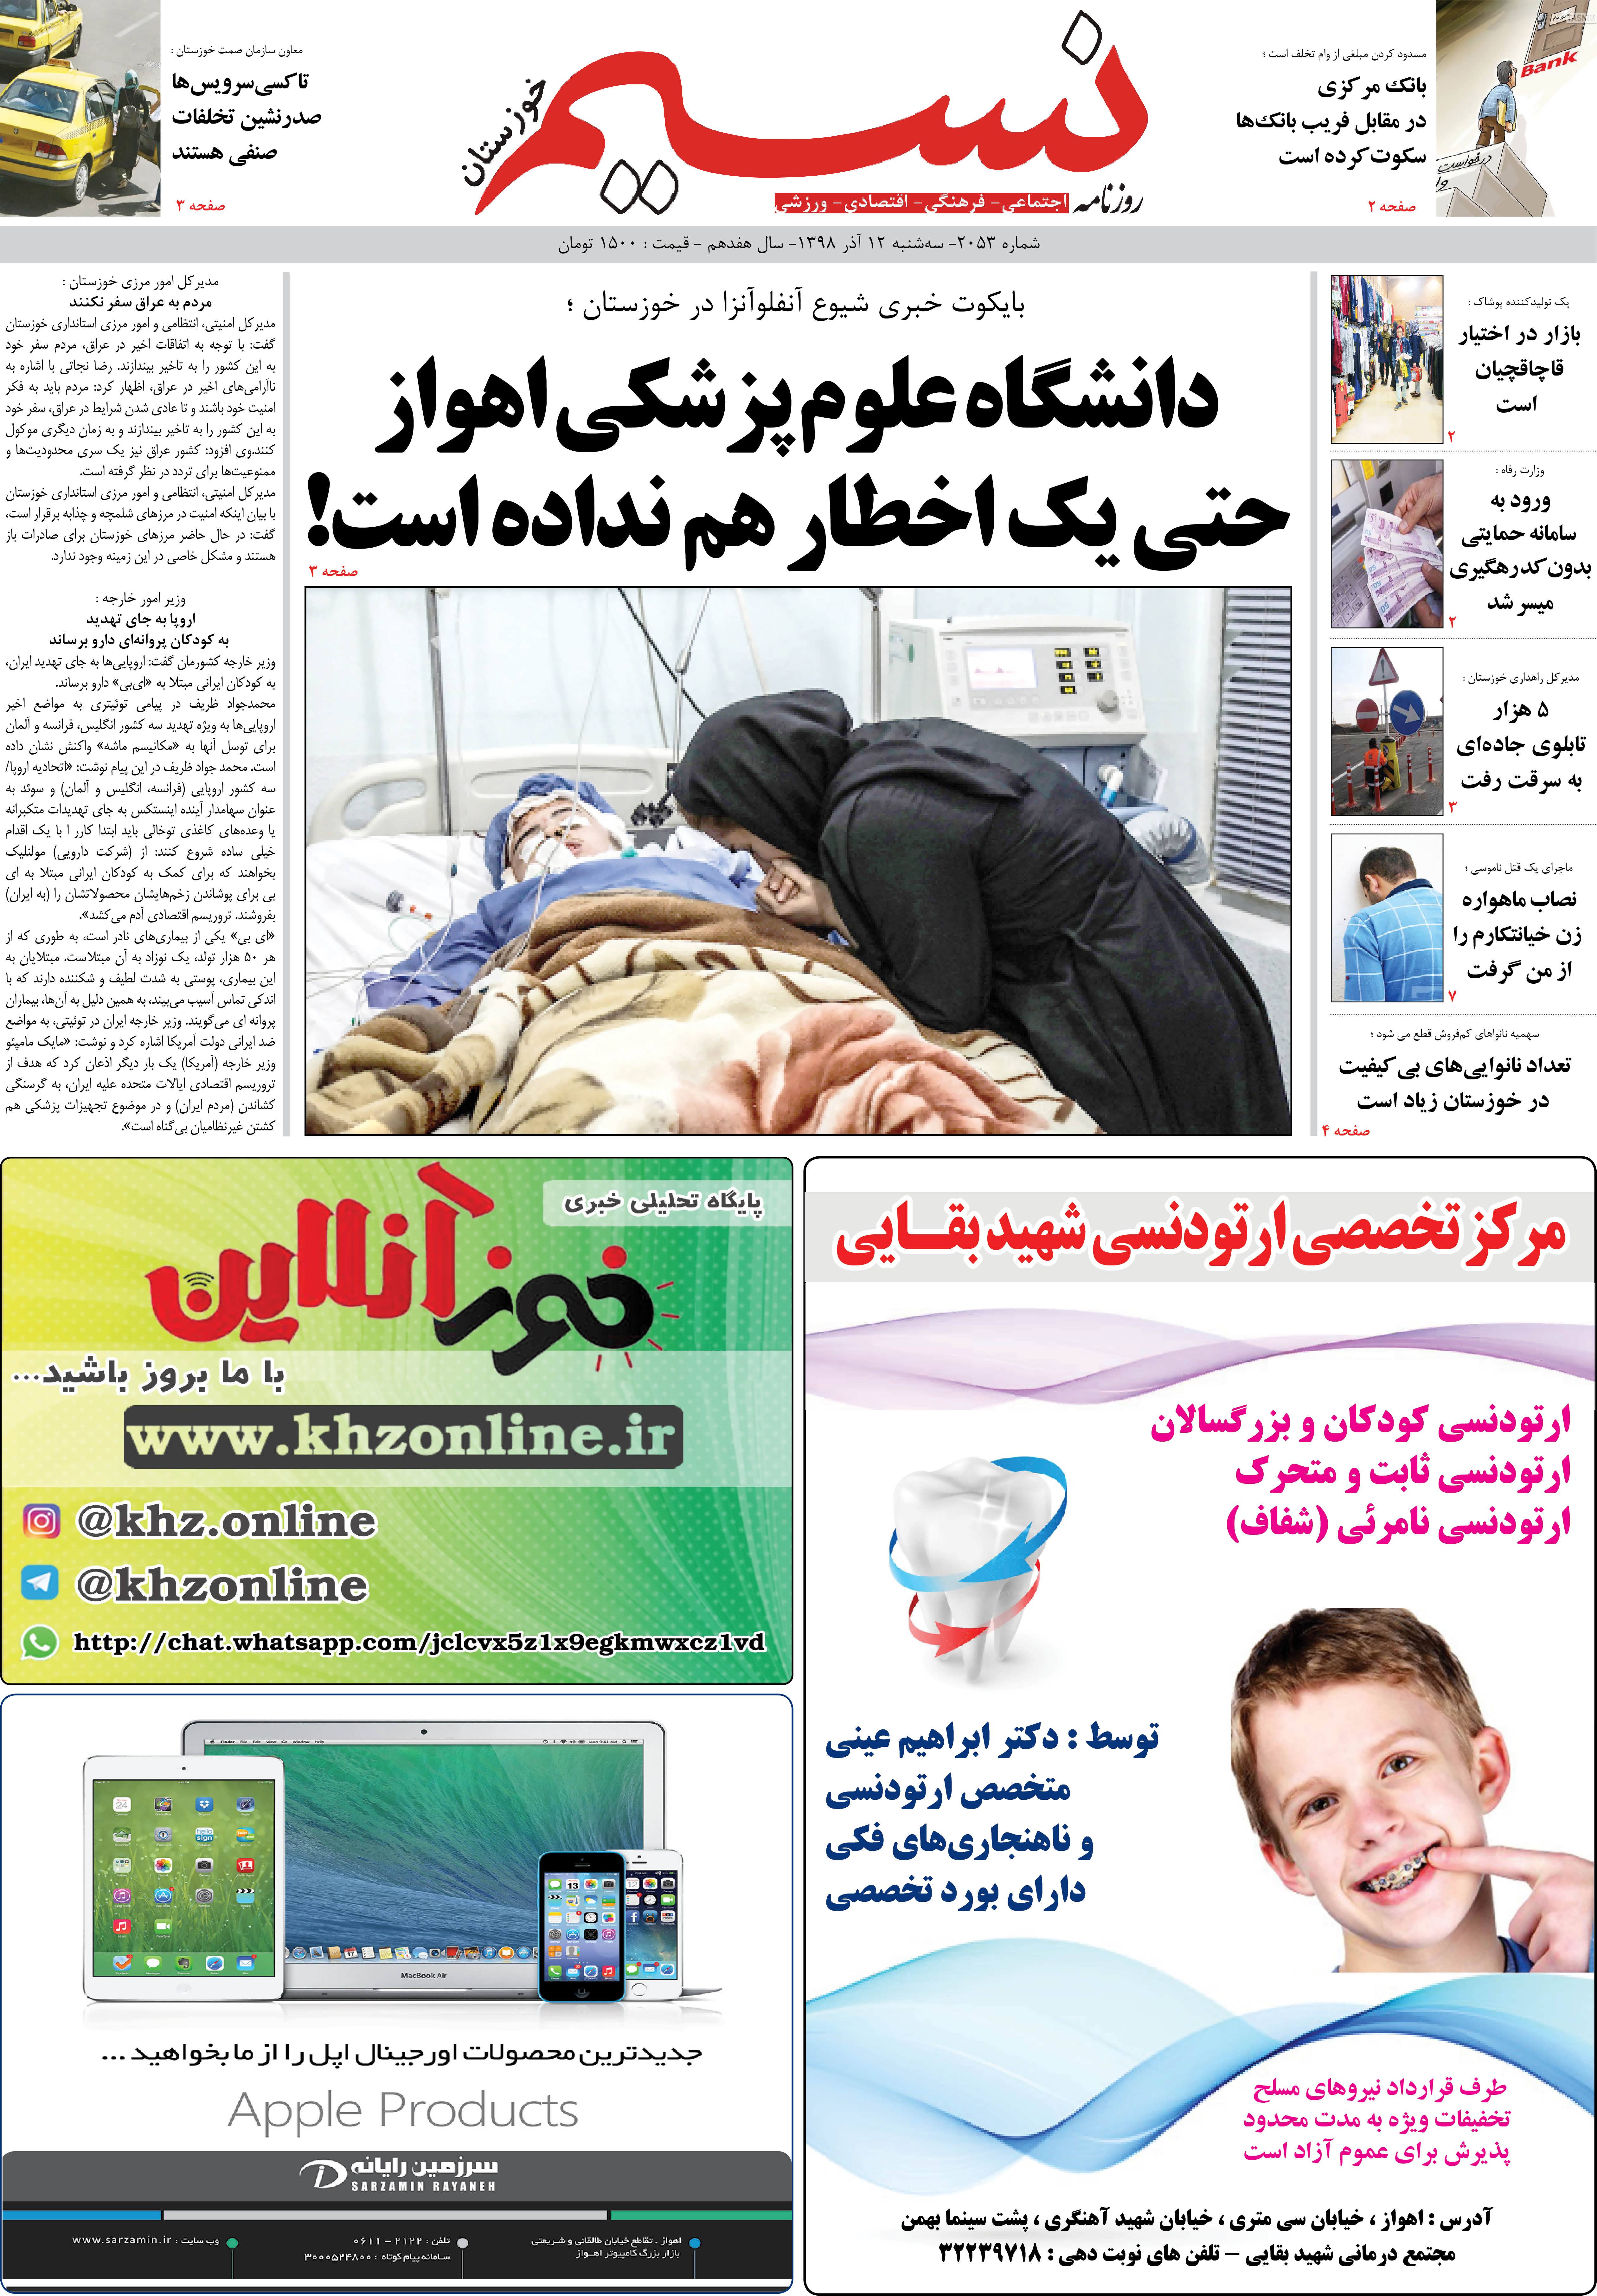 صفحه اصلی روزنامه نسیم شماره 2053 